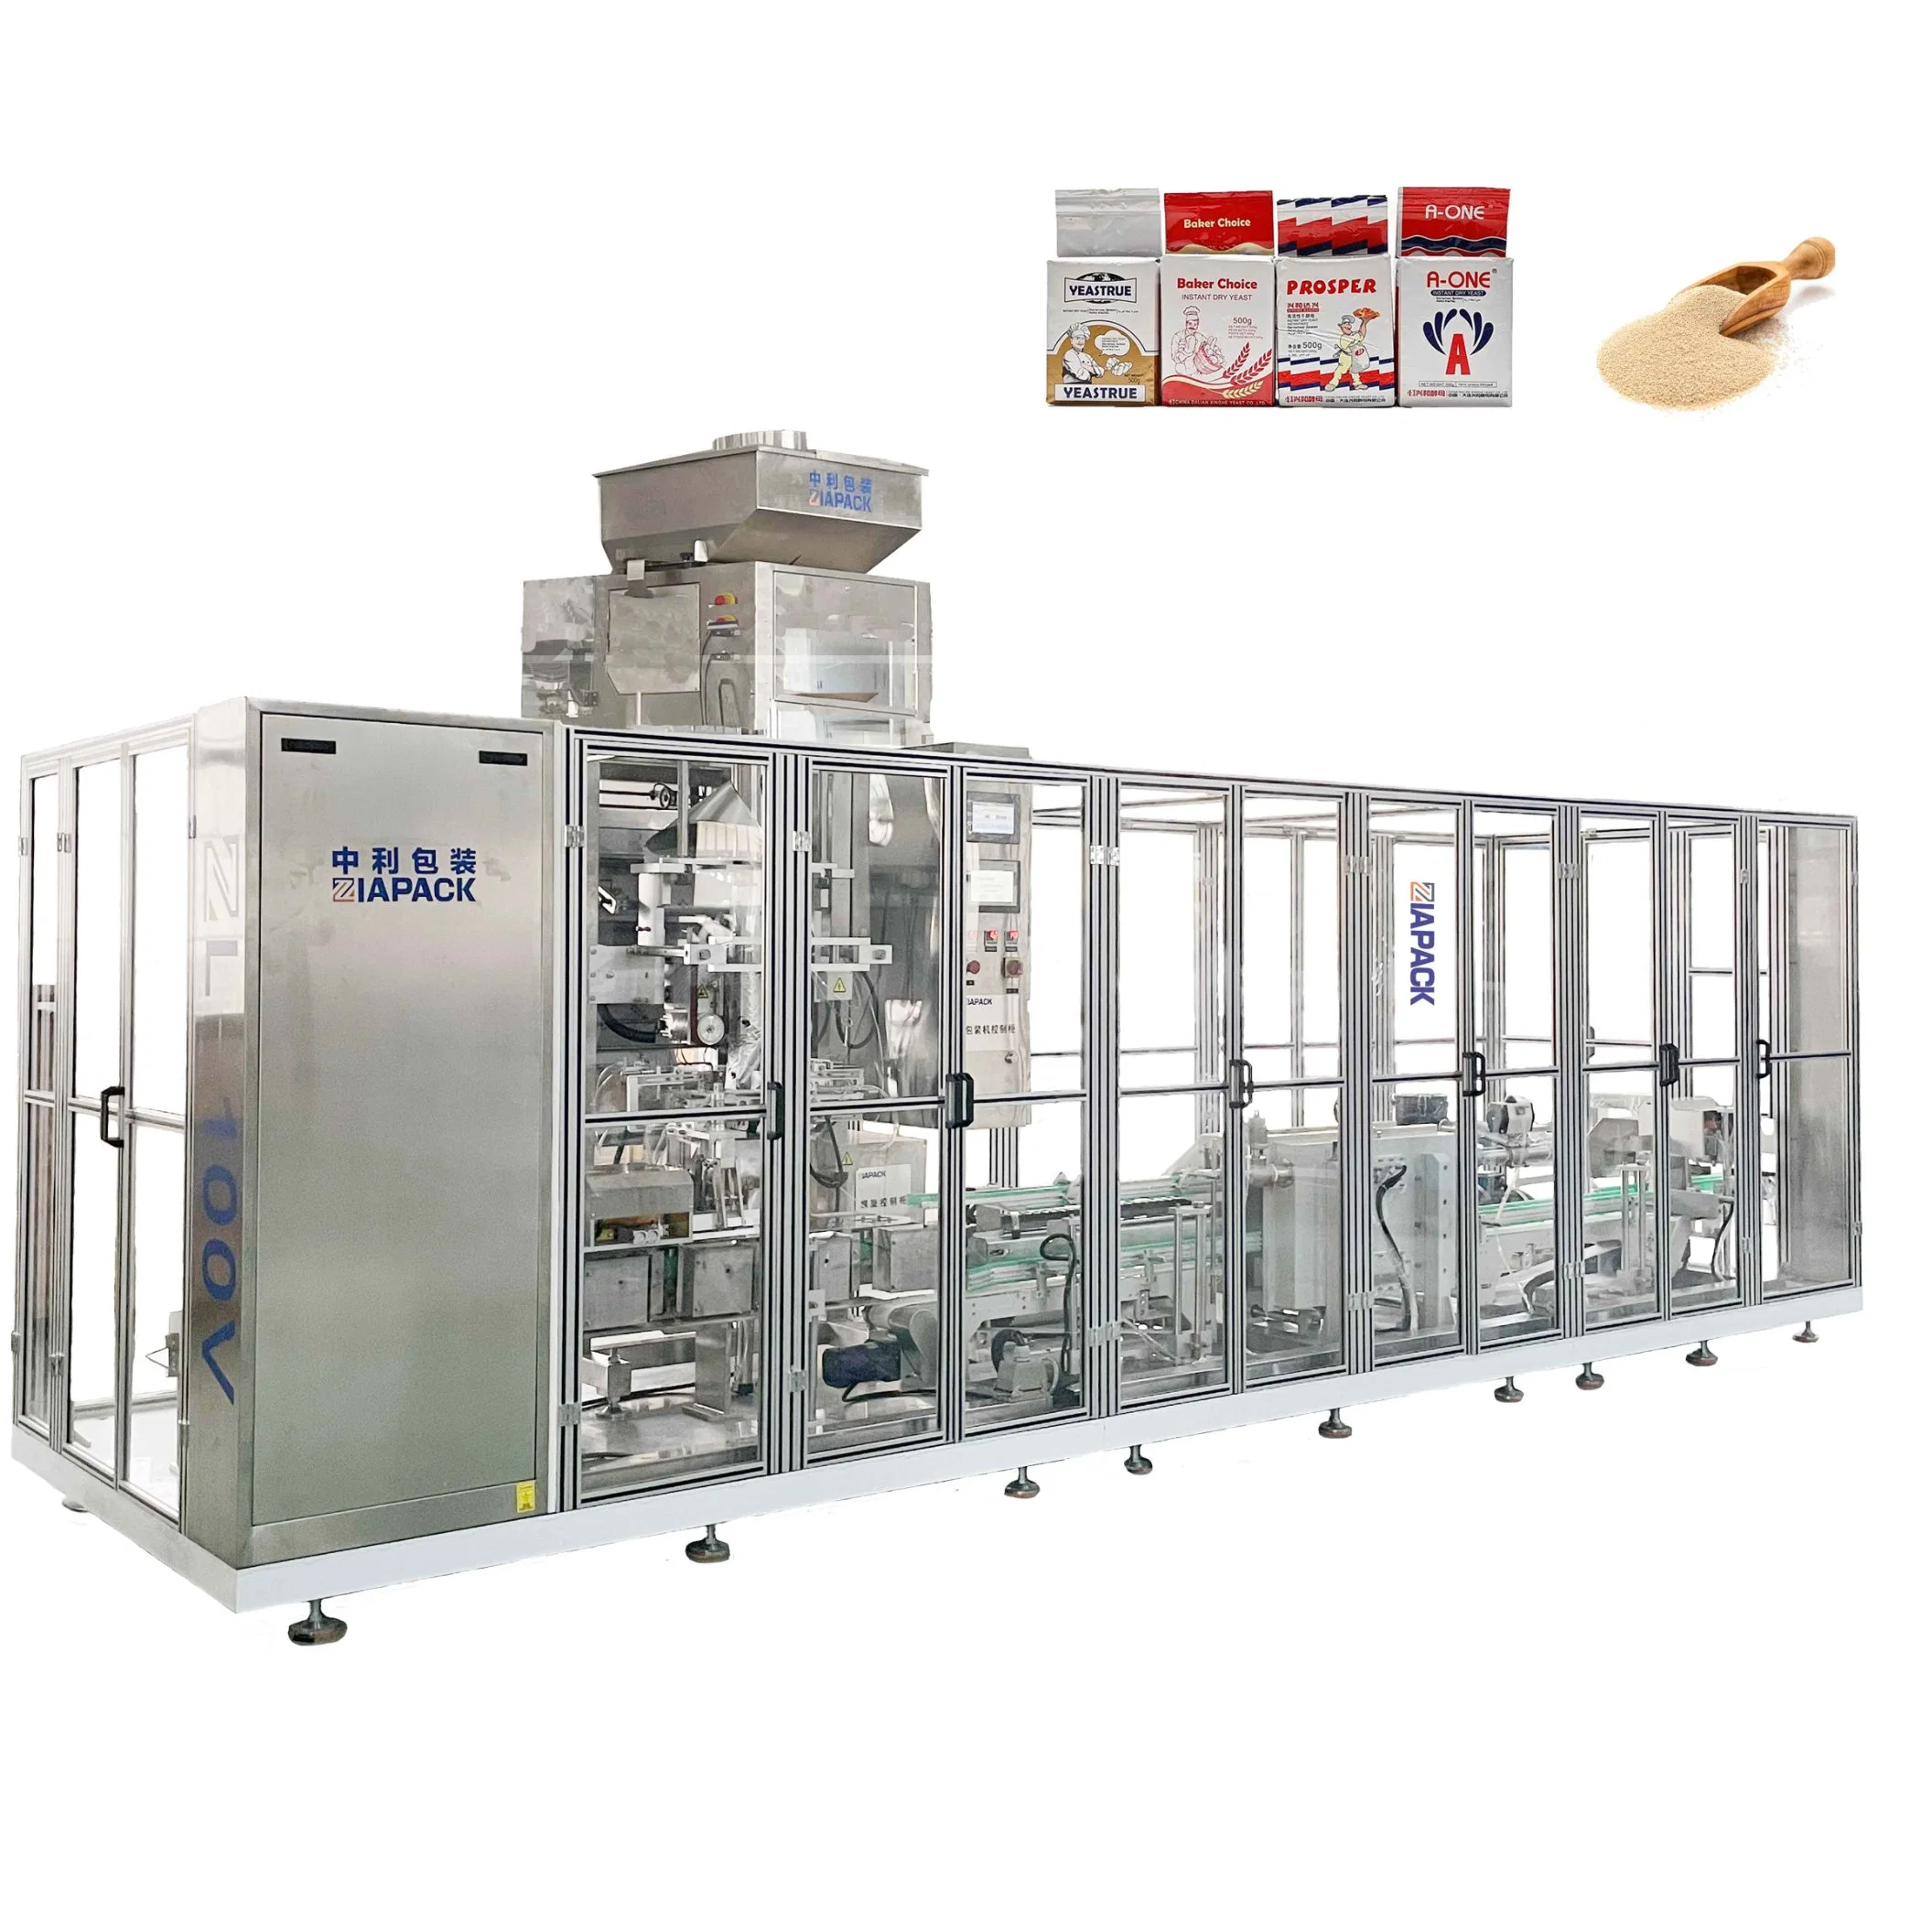 Multi-Funktions-automatische Ziegelsack Vertikale Formung Abdichtung Vakuumverpackung (Verpackung) Maschine für Kaffeepulver, Trockenhefe, Reis, Bohnen, Maiskörner